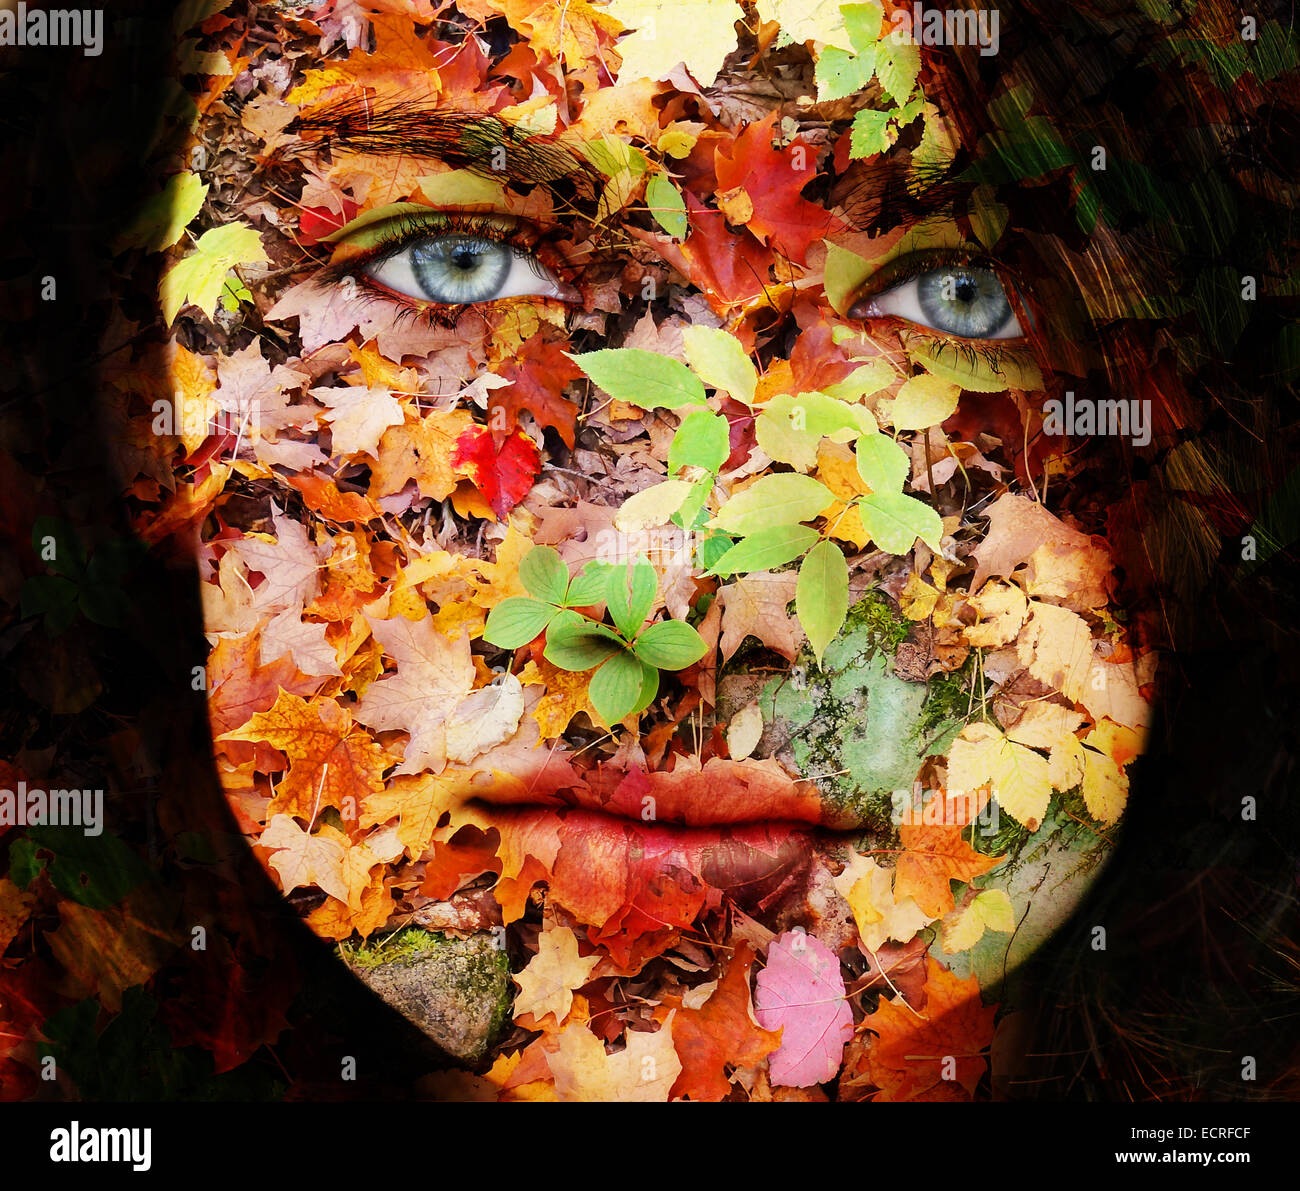 Visage triste mère nature concept, femme avec des feuilles d'automne la texture Banque D'Images